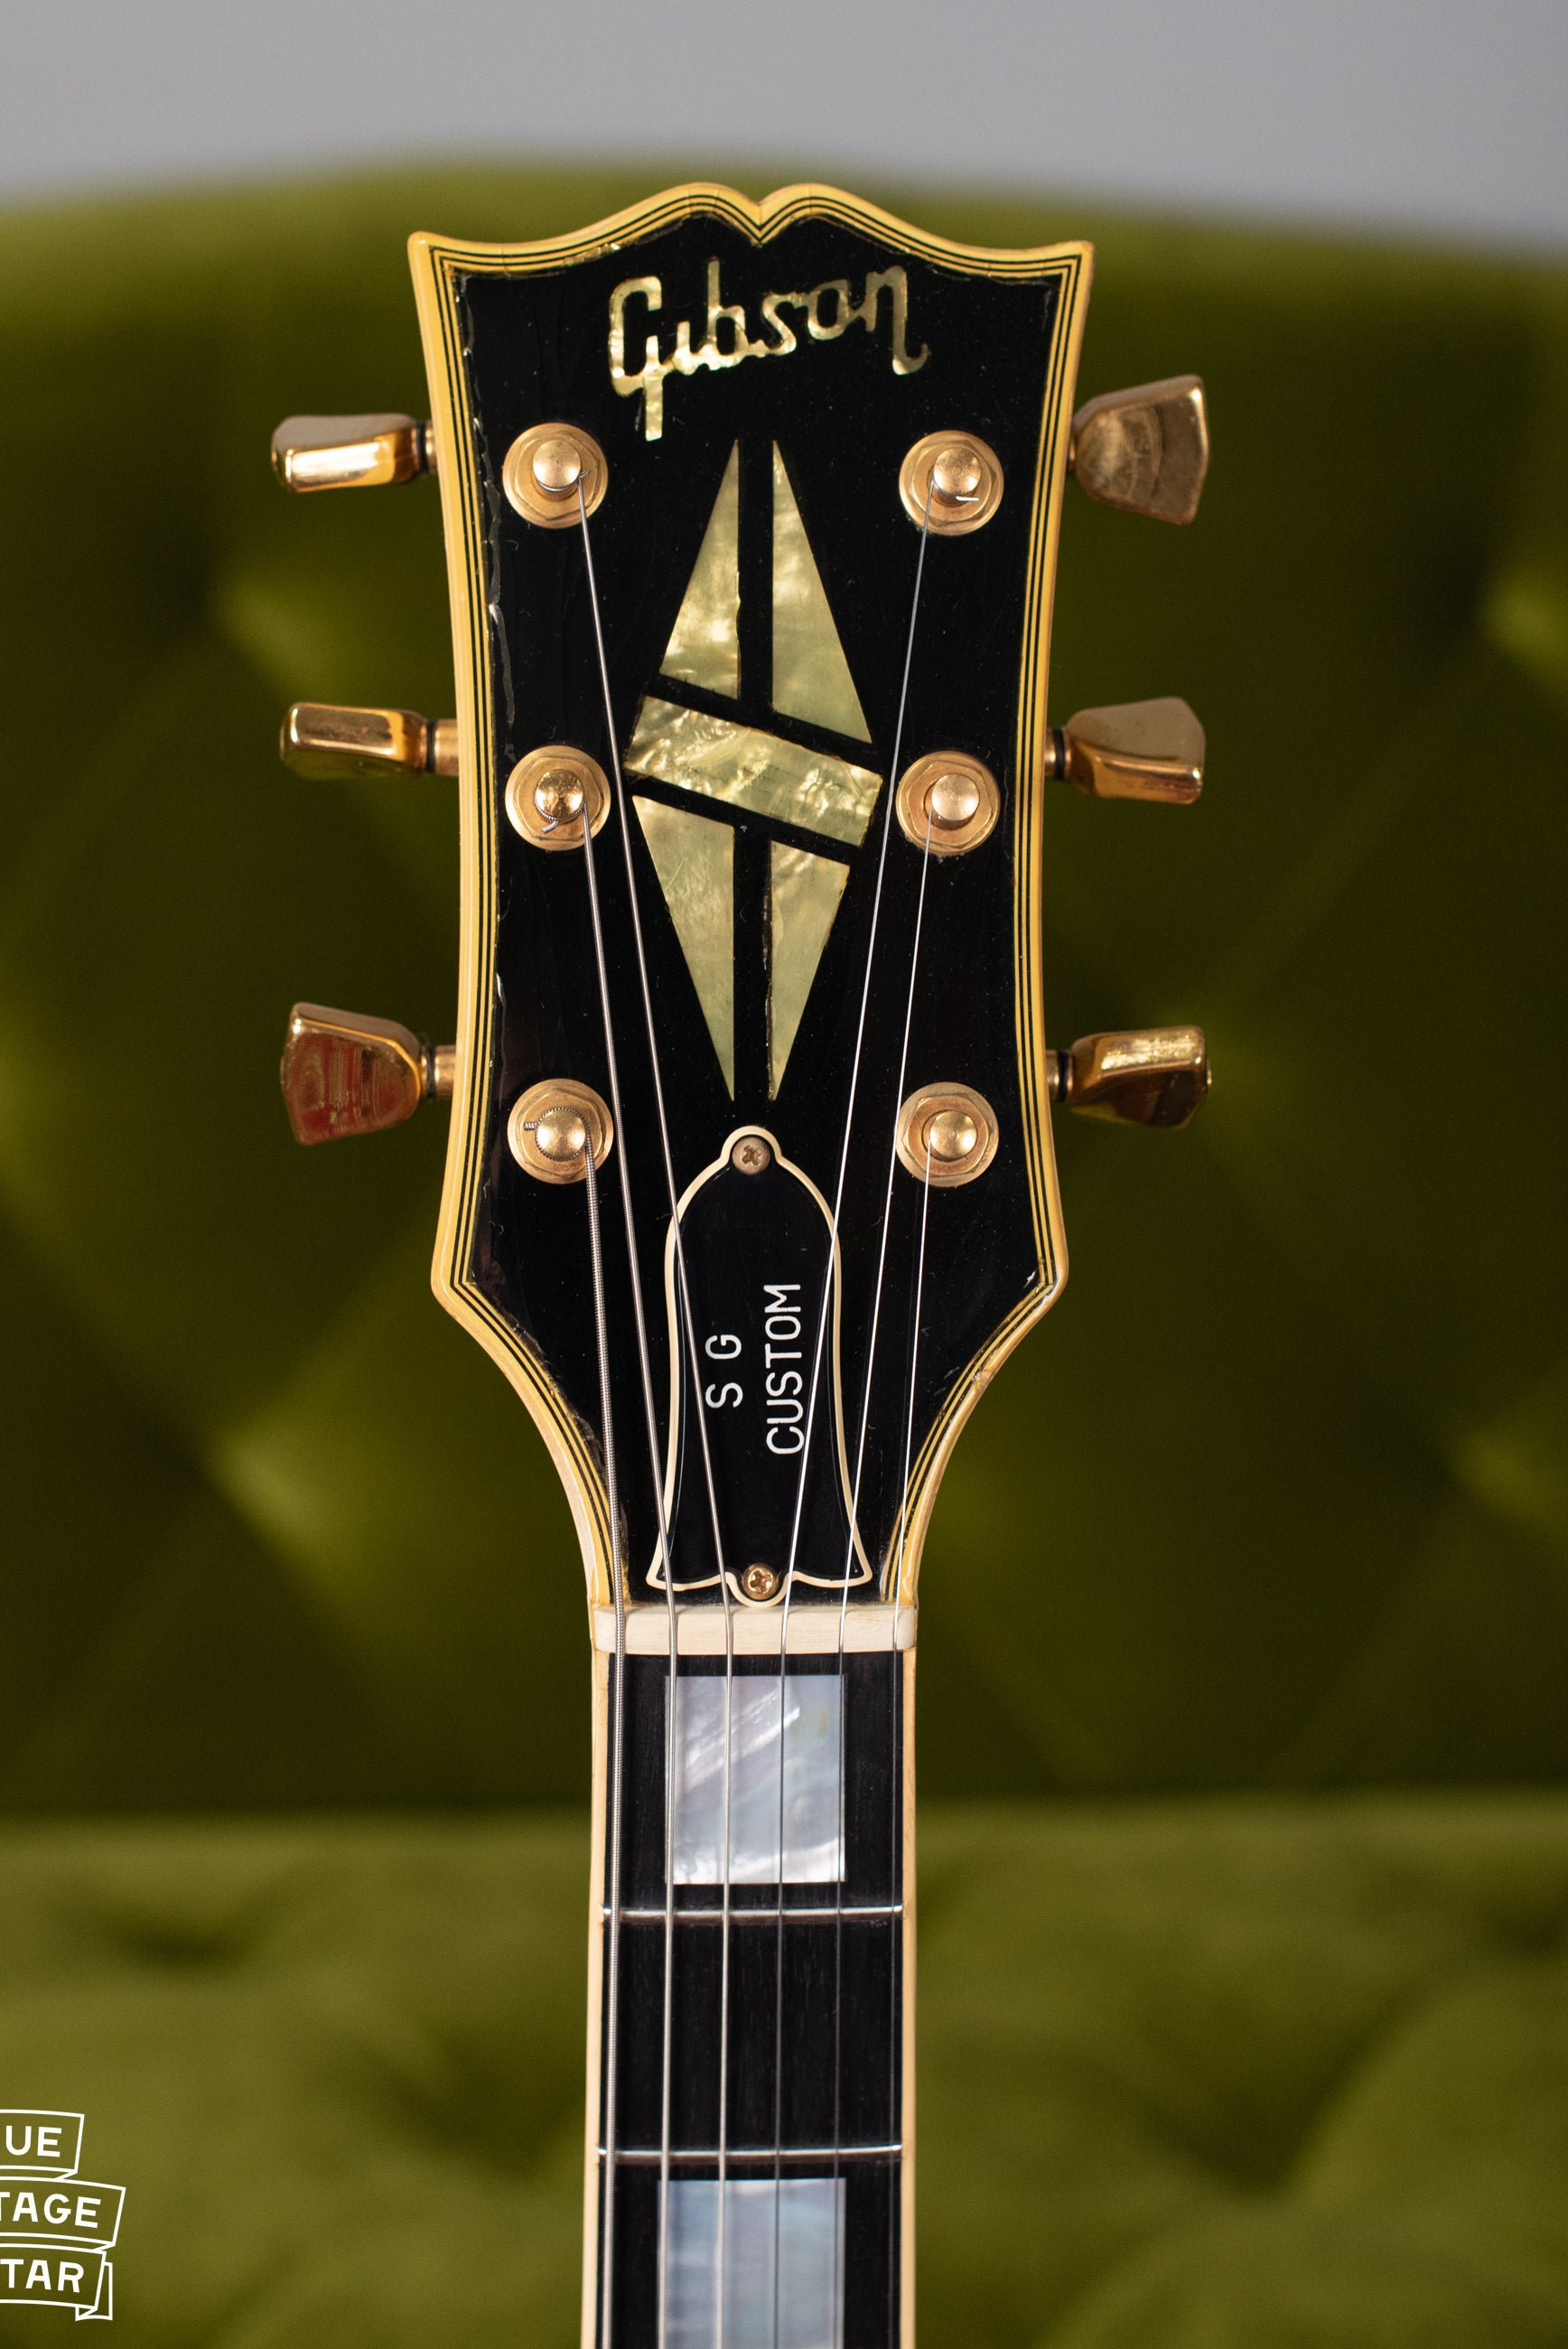 Gibson SG Custom headstock